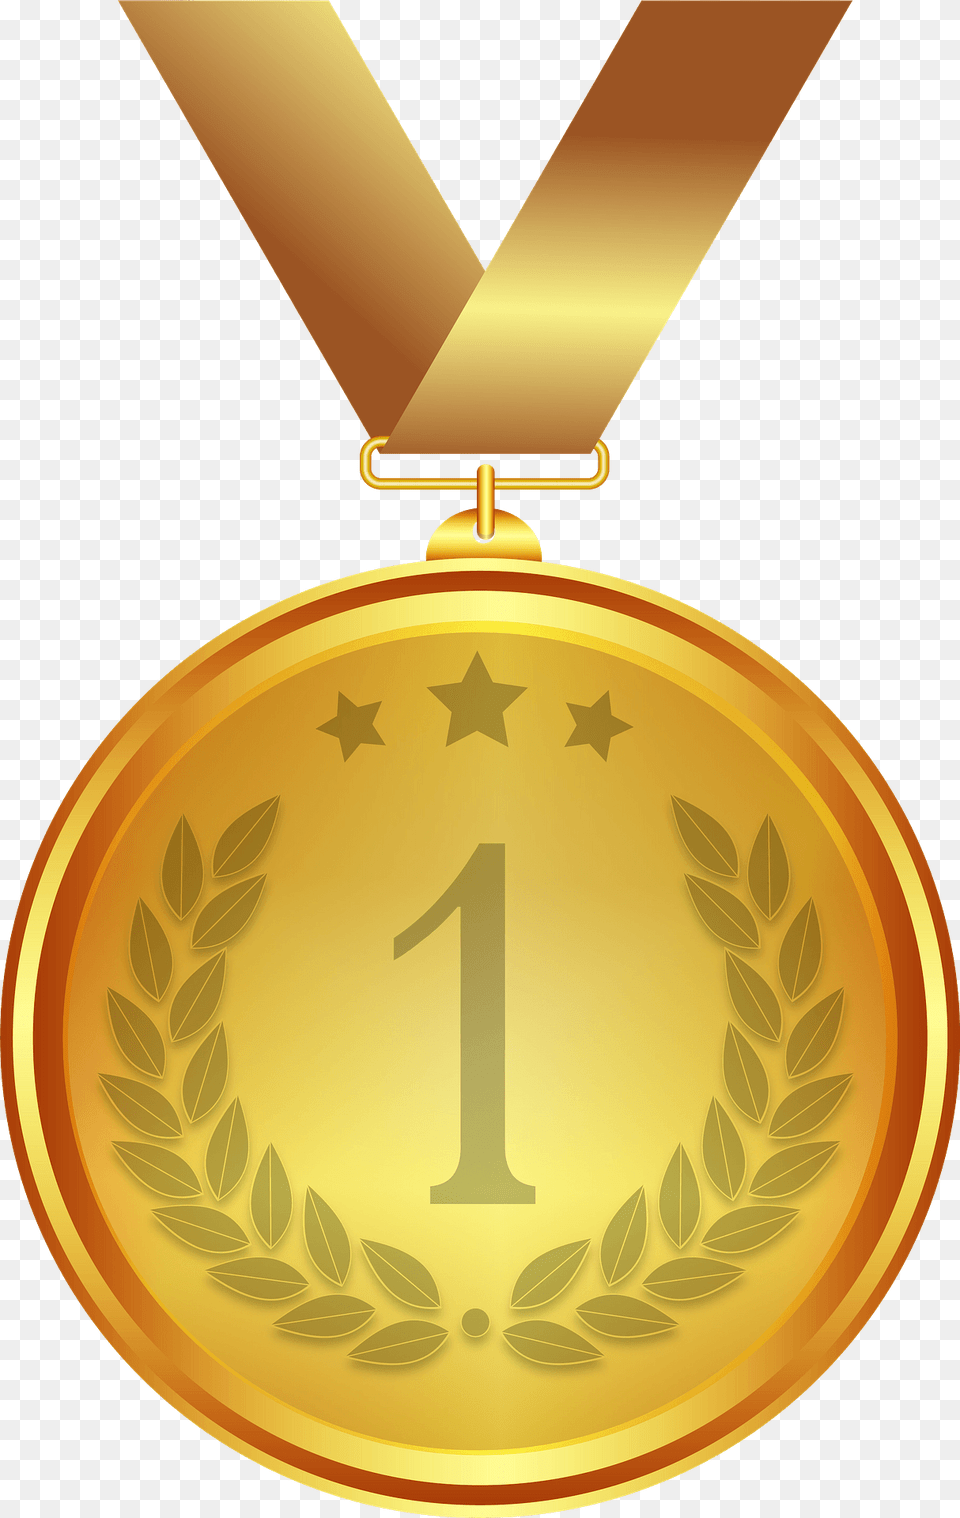 Gold Medal Clipart, Gold Medal, Trophy Free Transparent Png